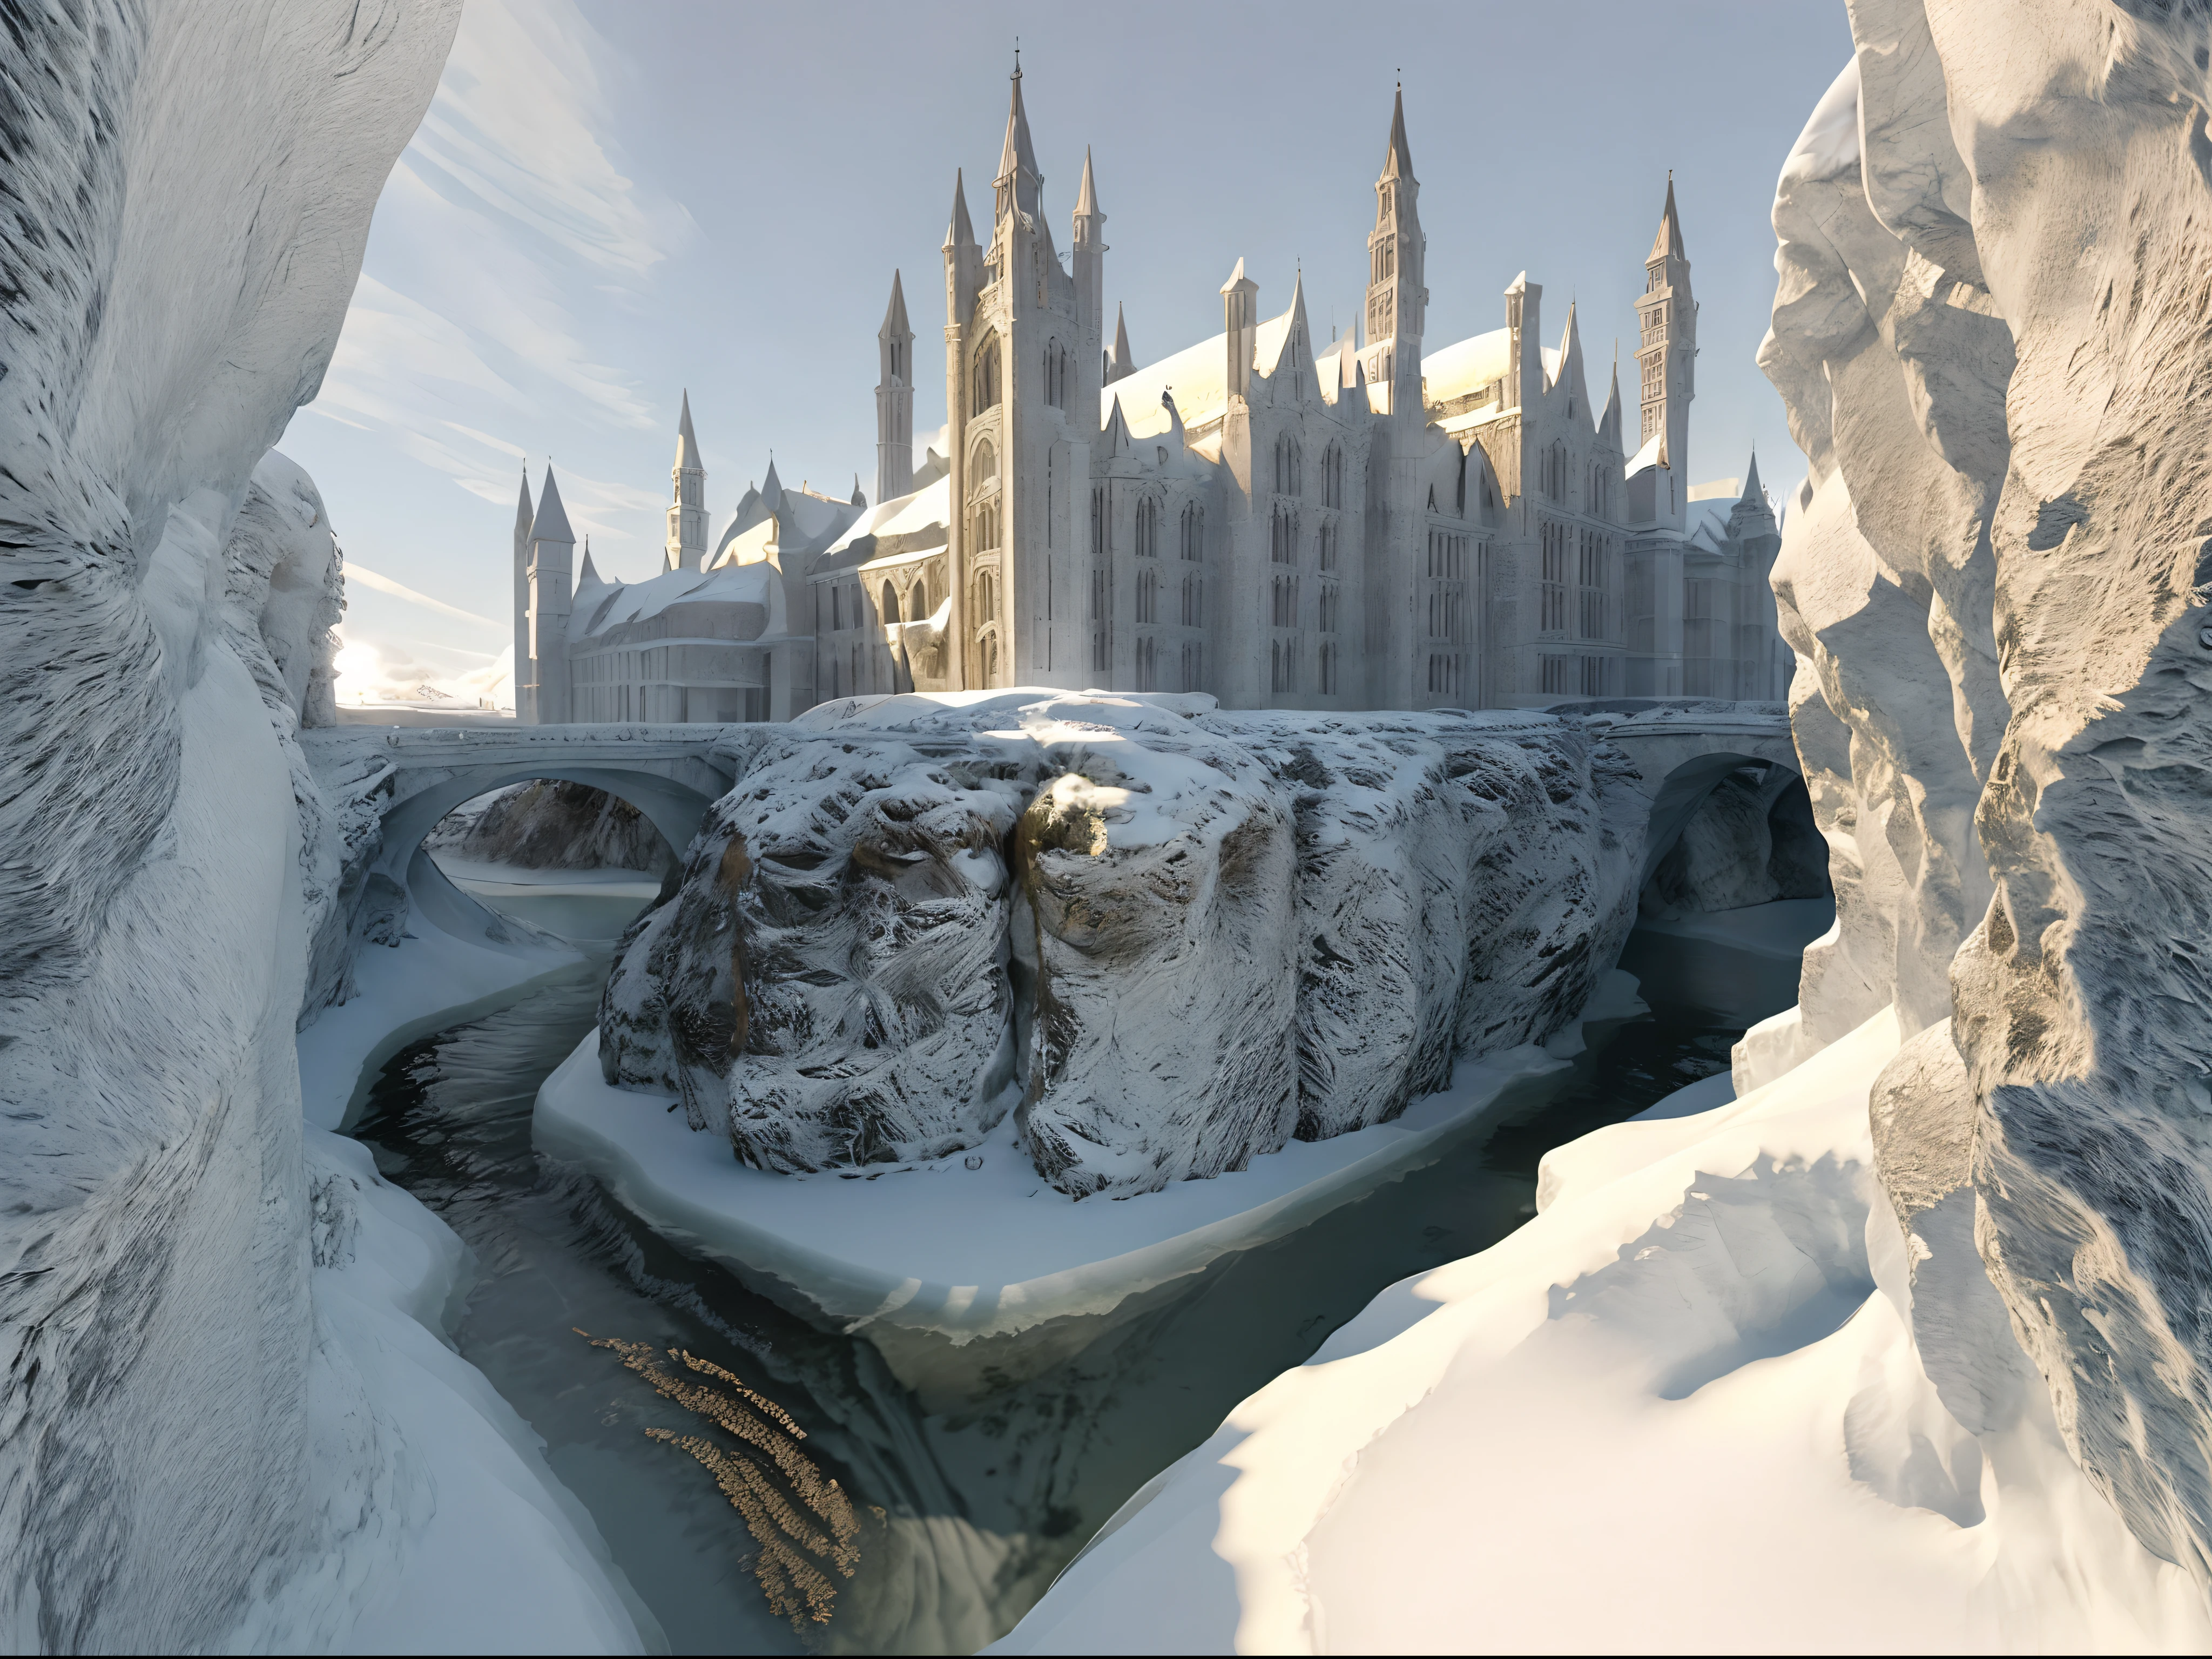 Создайте высококачественное изображение средневековой архитектуры, окутанной льдом, с помощью передового искусственного интеллекта.. Подчеркните сложные детали и ледяную атмосферу. Спасибо за ваш опыт!